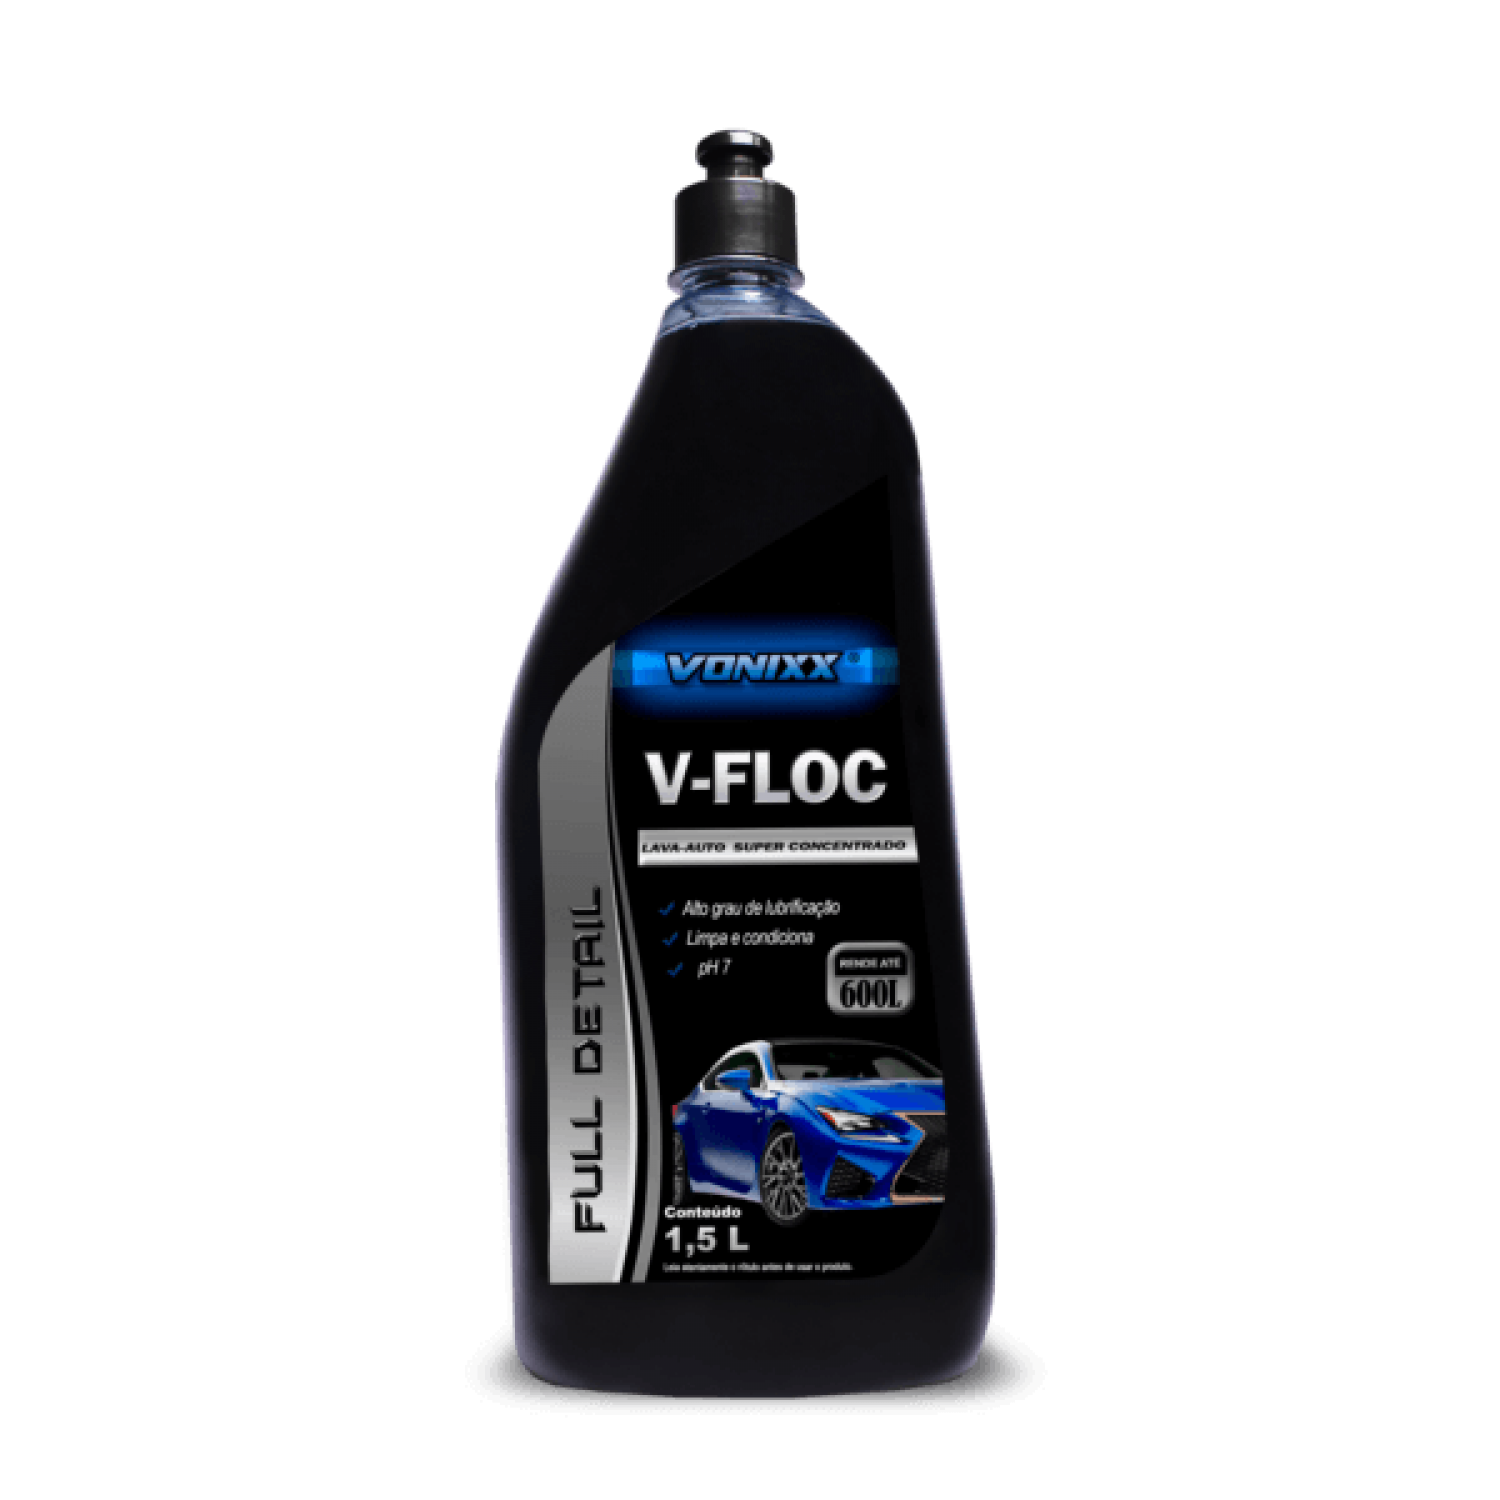 V-FLOC – LAVA AUTOS SUPER CONCENTRADO (1,5L) - VONIXX 